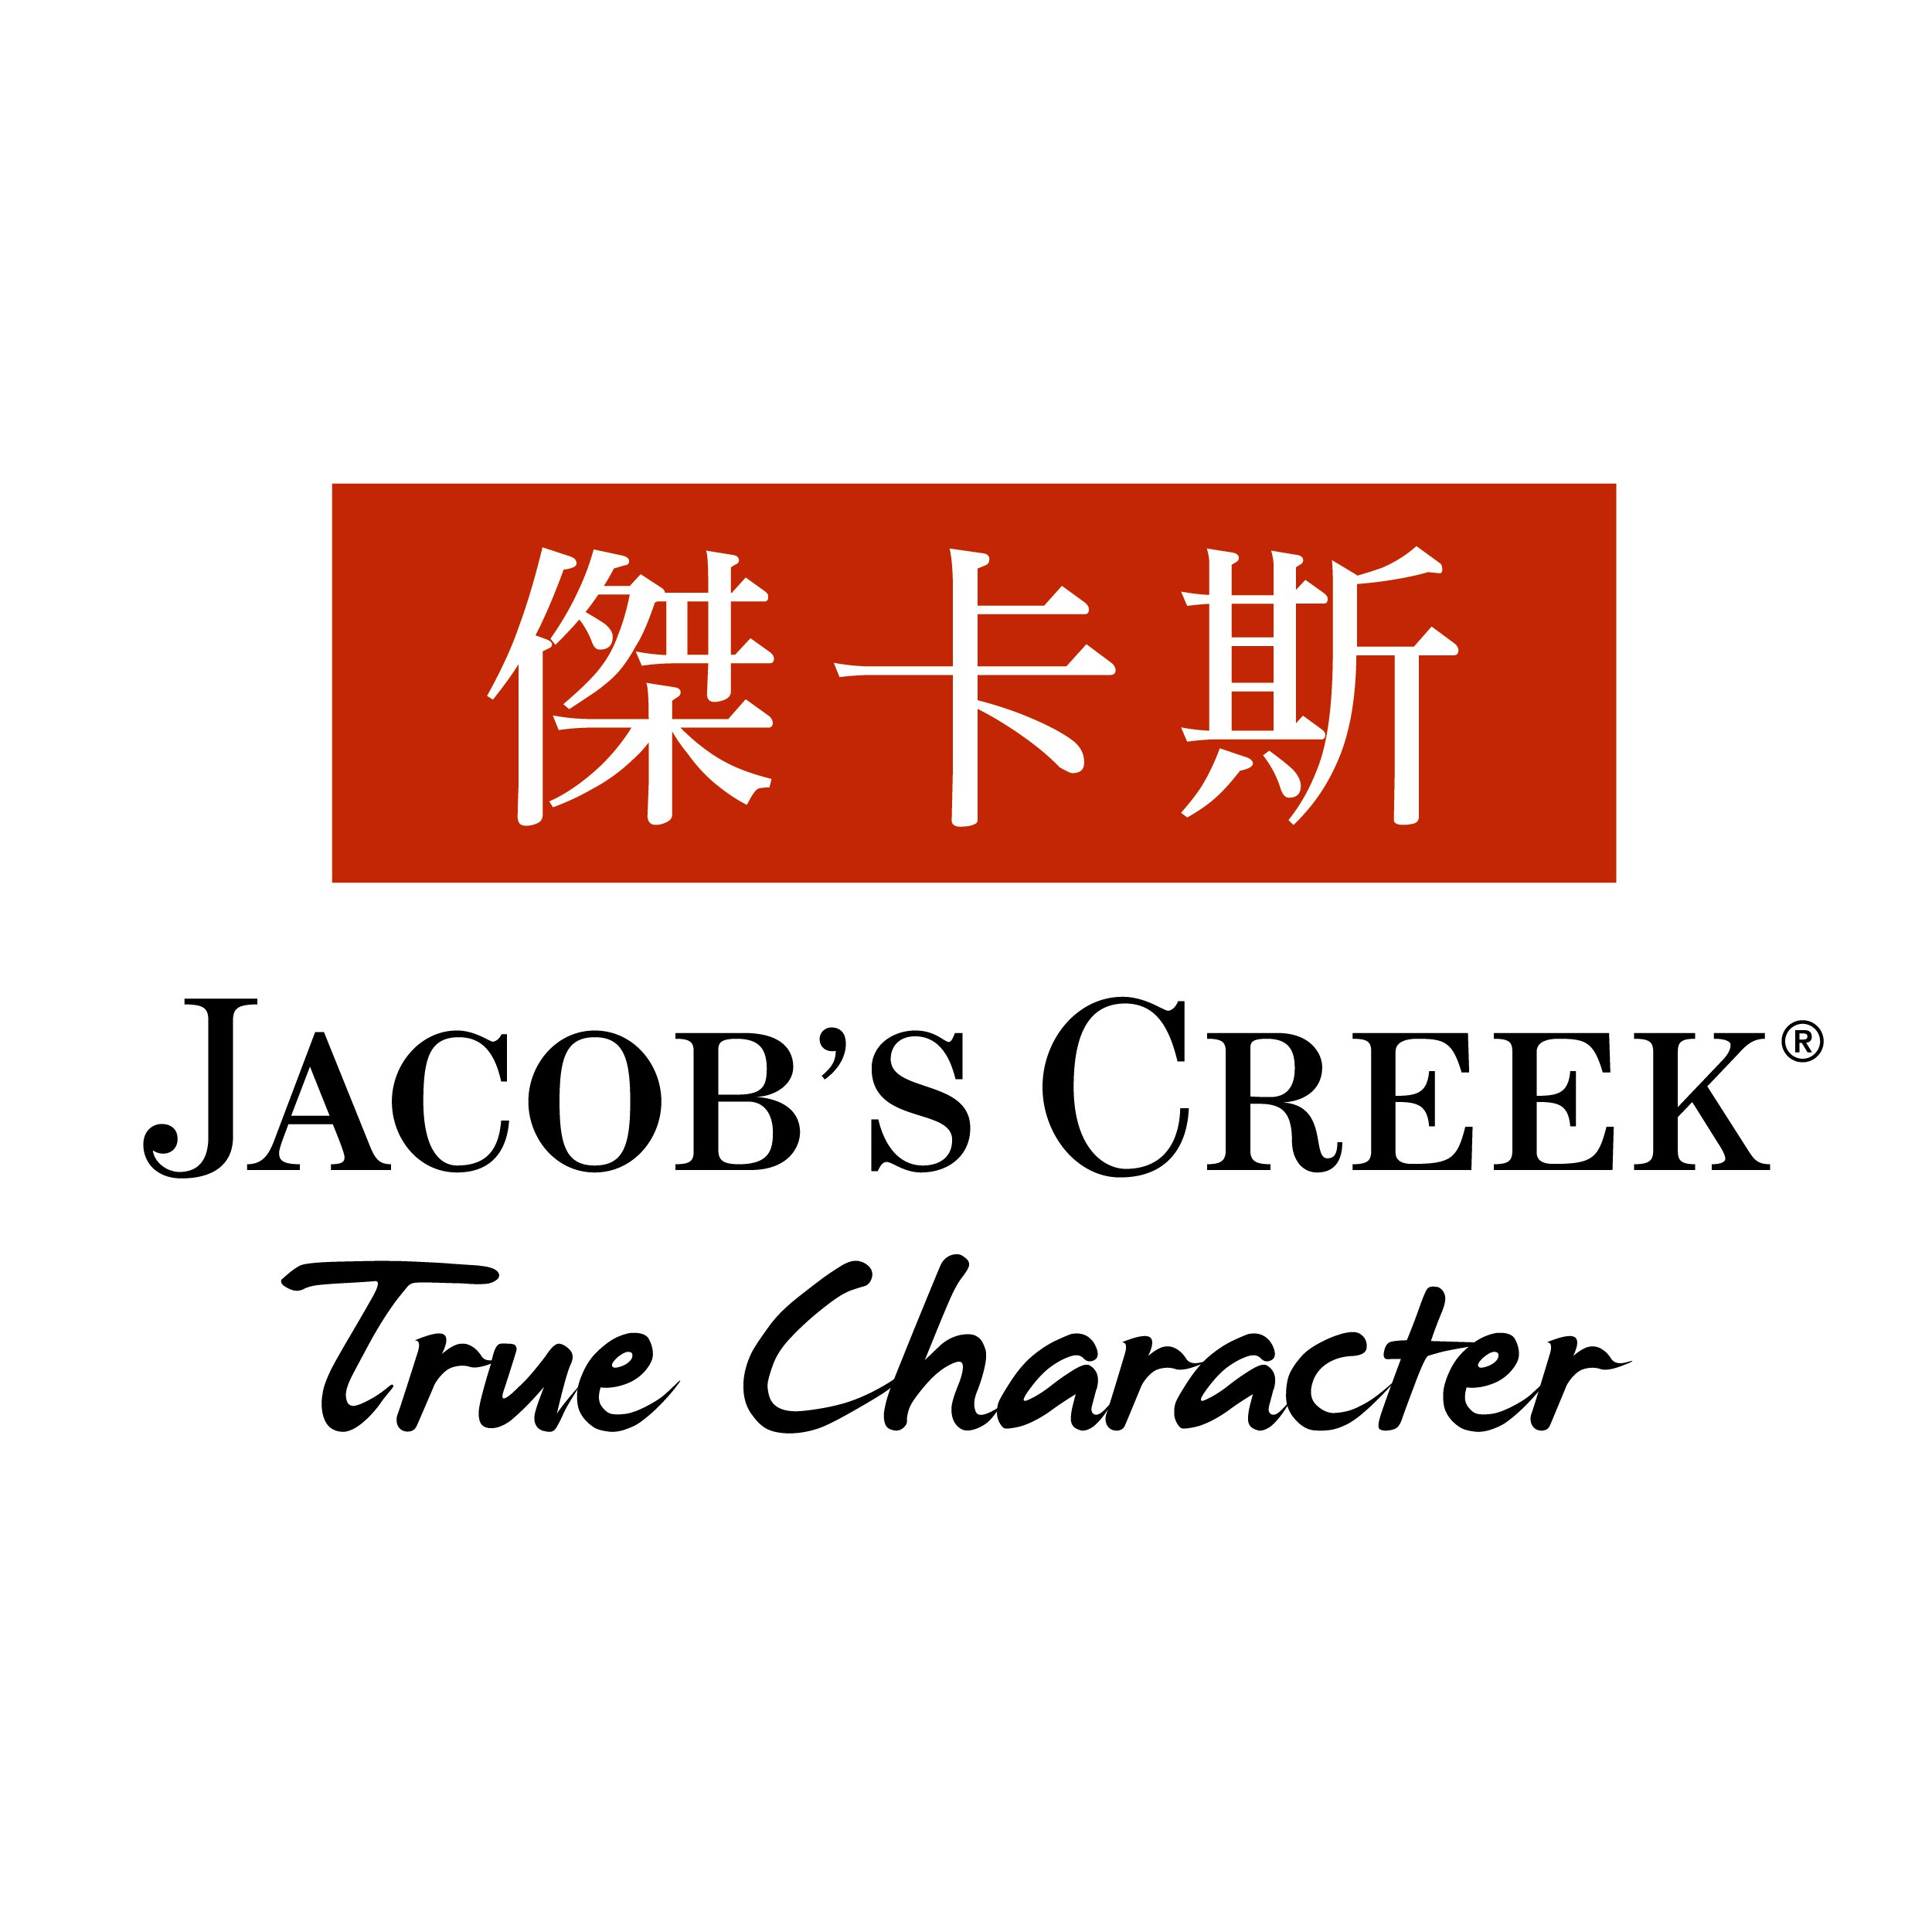 可捷 平面設計 作品 - JACOB'S CREEK 傑卡斯 產品卡資料夾 | 可捷印刷